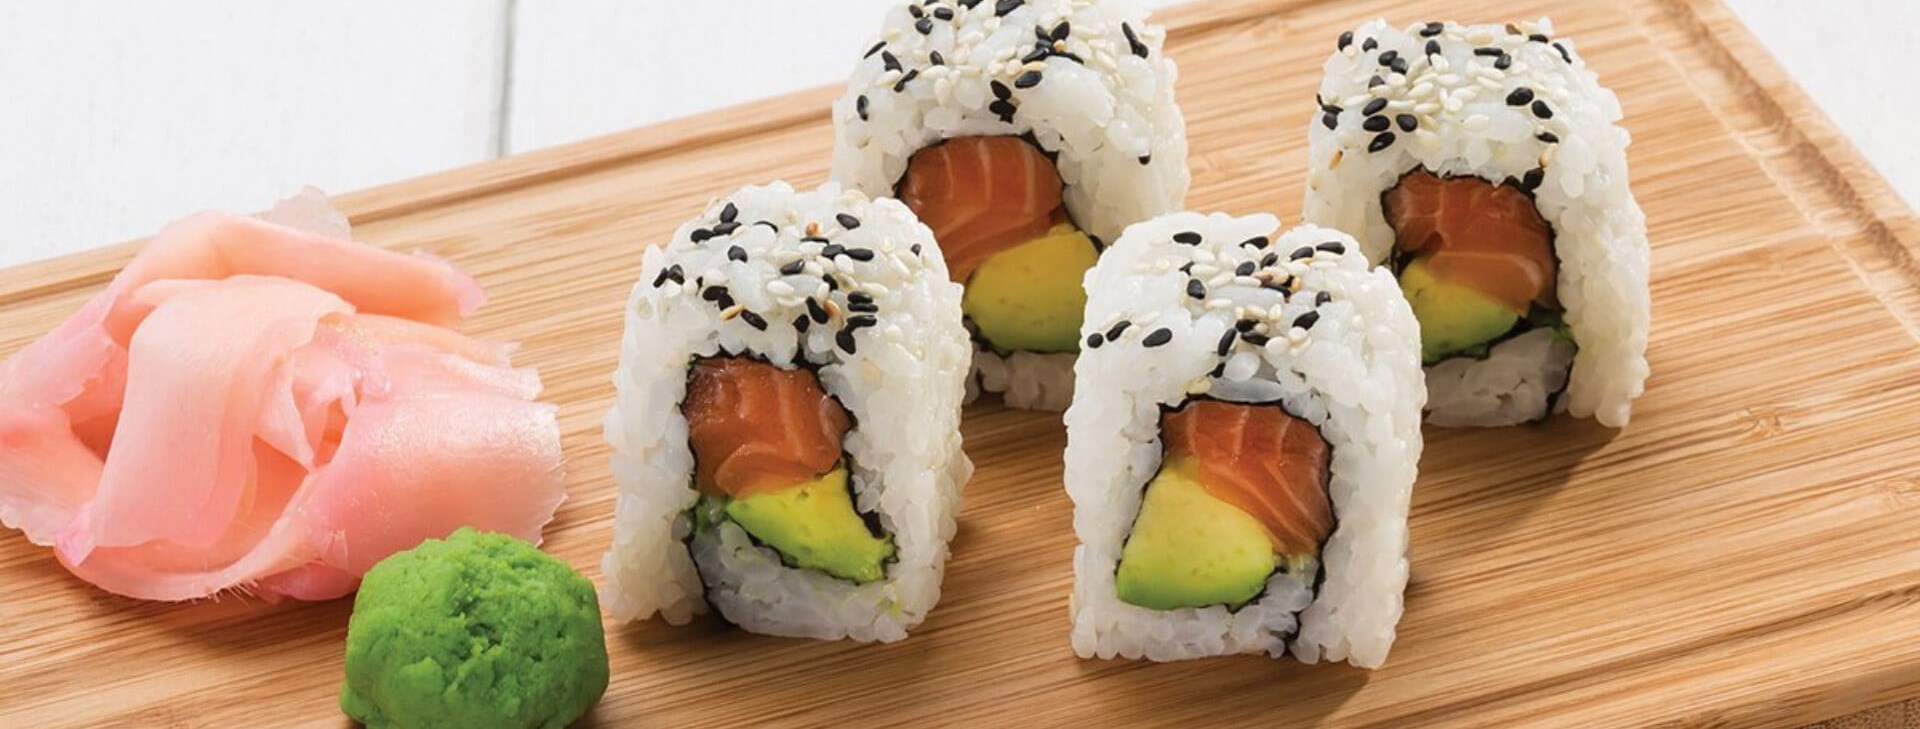 john dorys sushi specials